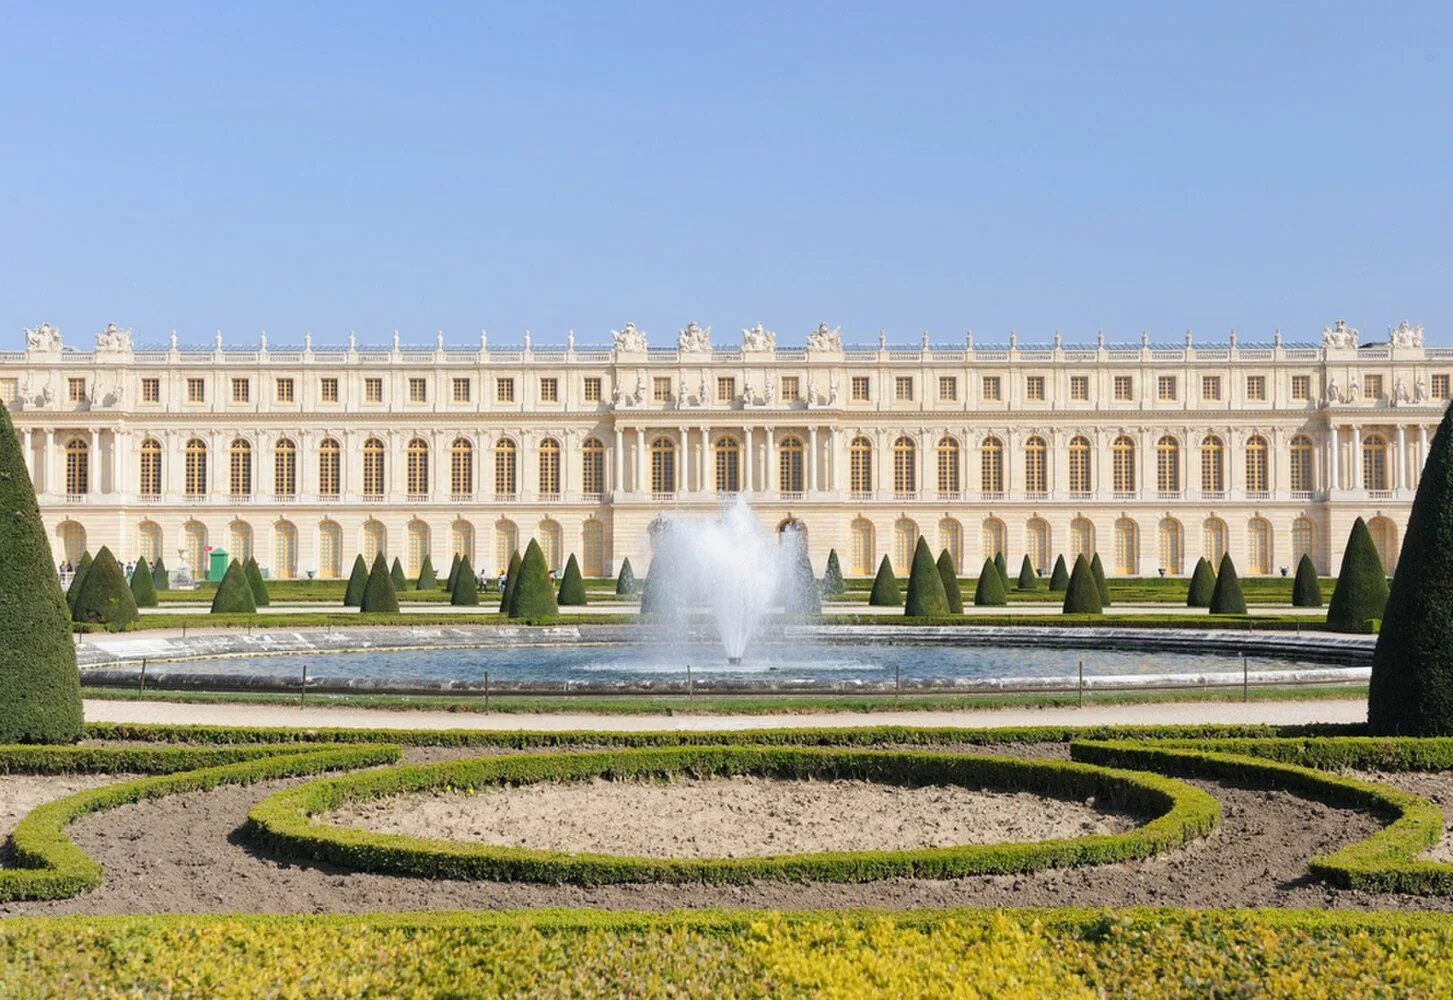 Версаль билеты. Версальский дворец. Версаль. Версальский дворцово-парковый комплекс, Франция. Королевский дворец в Версале. Дворец и парк в Версале Франция.